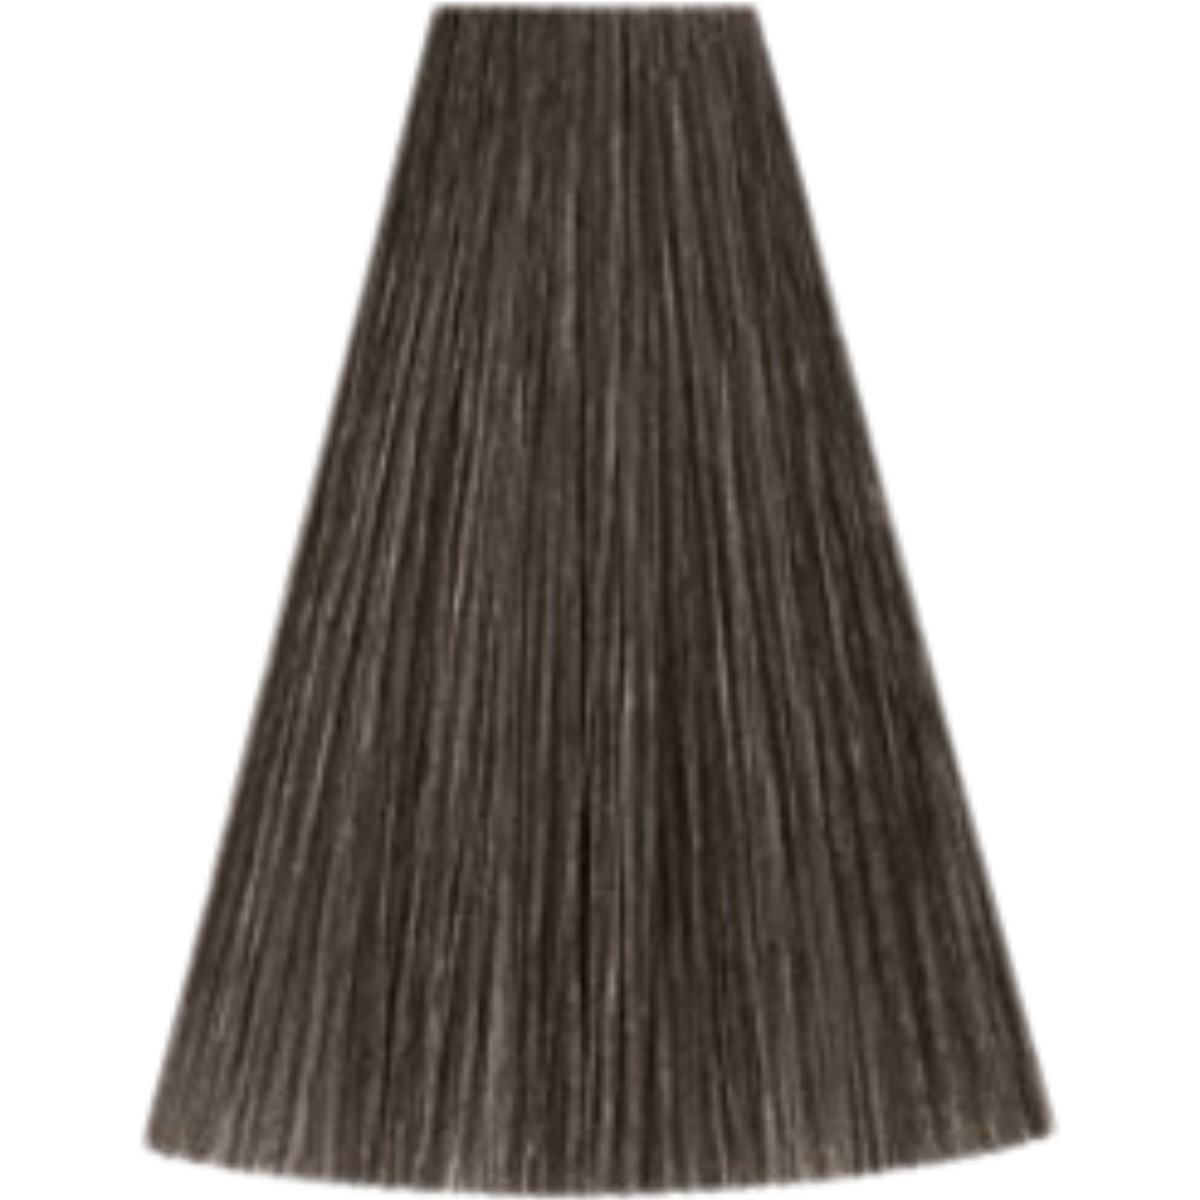 צבע שיער 6/16 DARK BLONDE ASH VIOLET קאדוס KADUS צבע לשיער 60 גרם